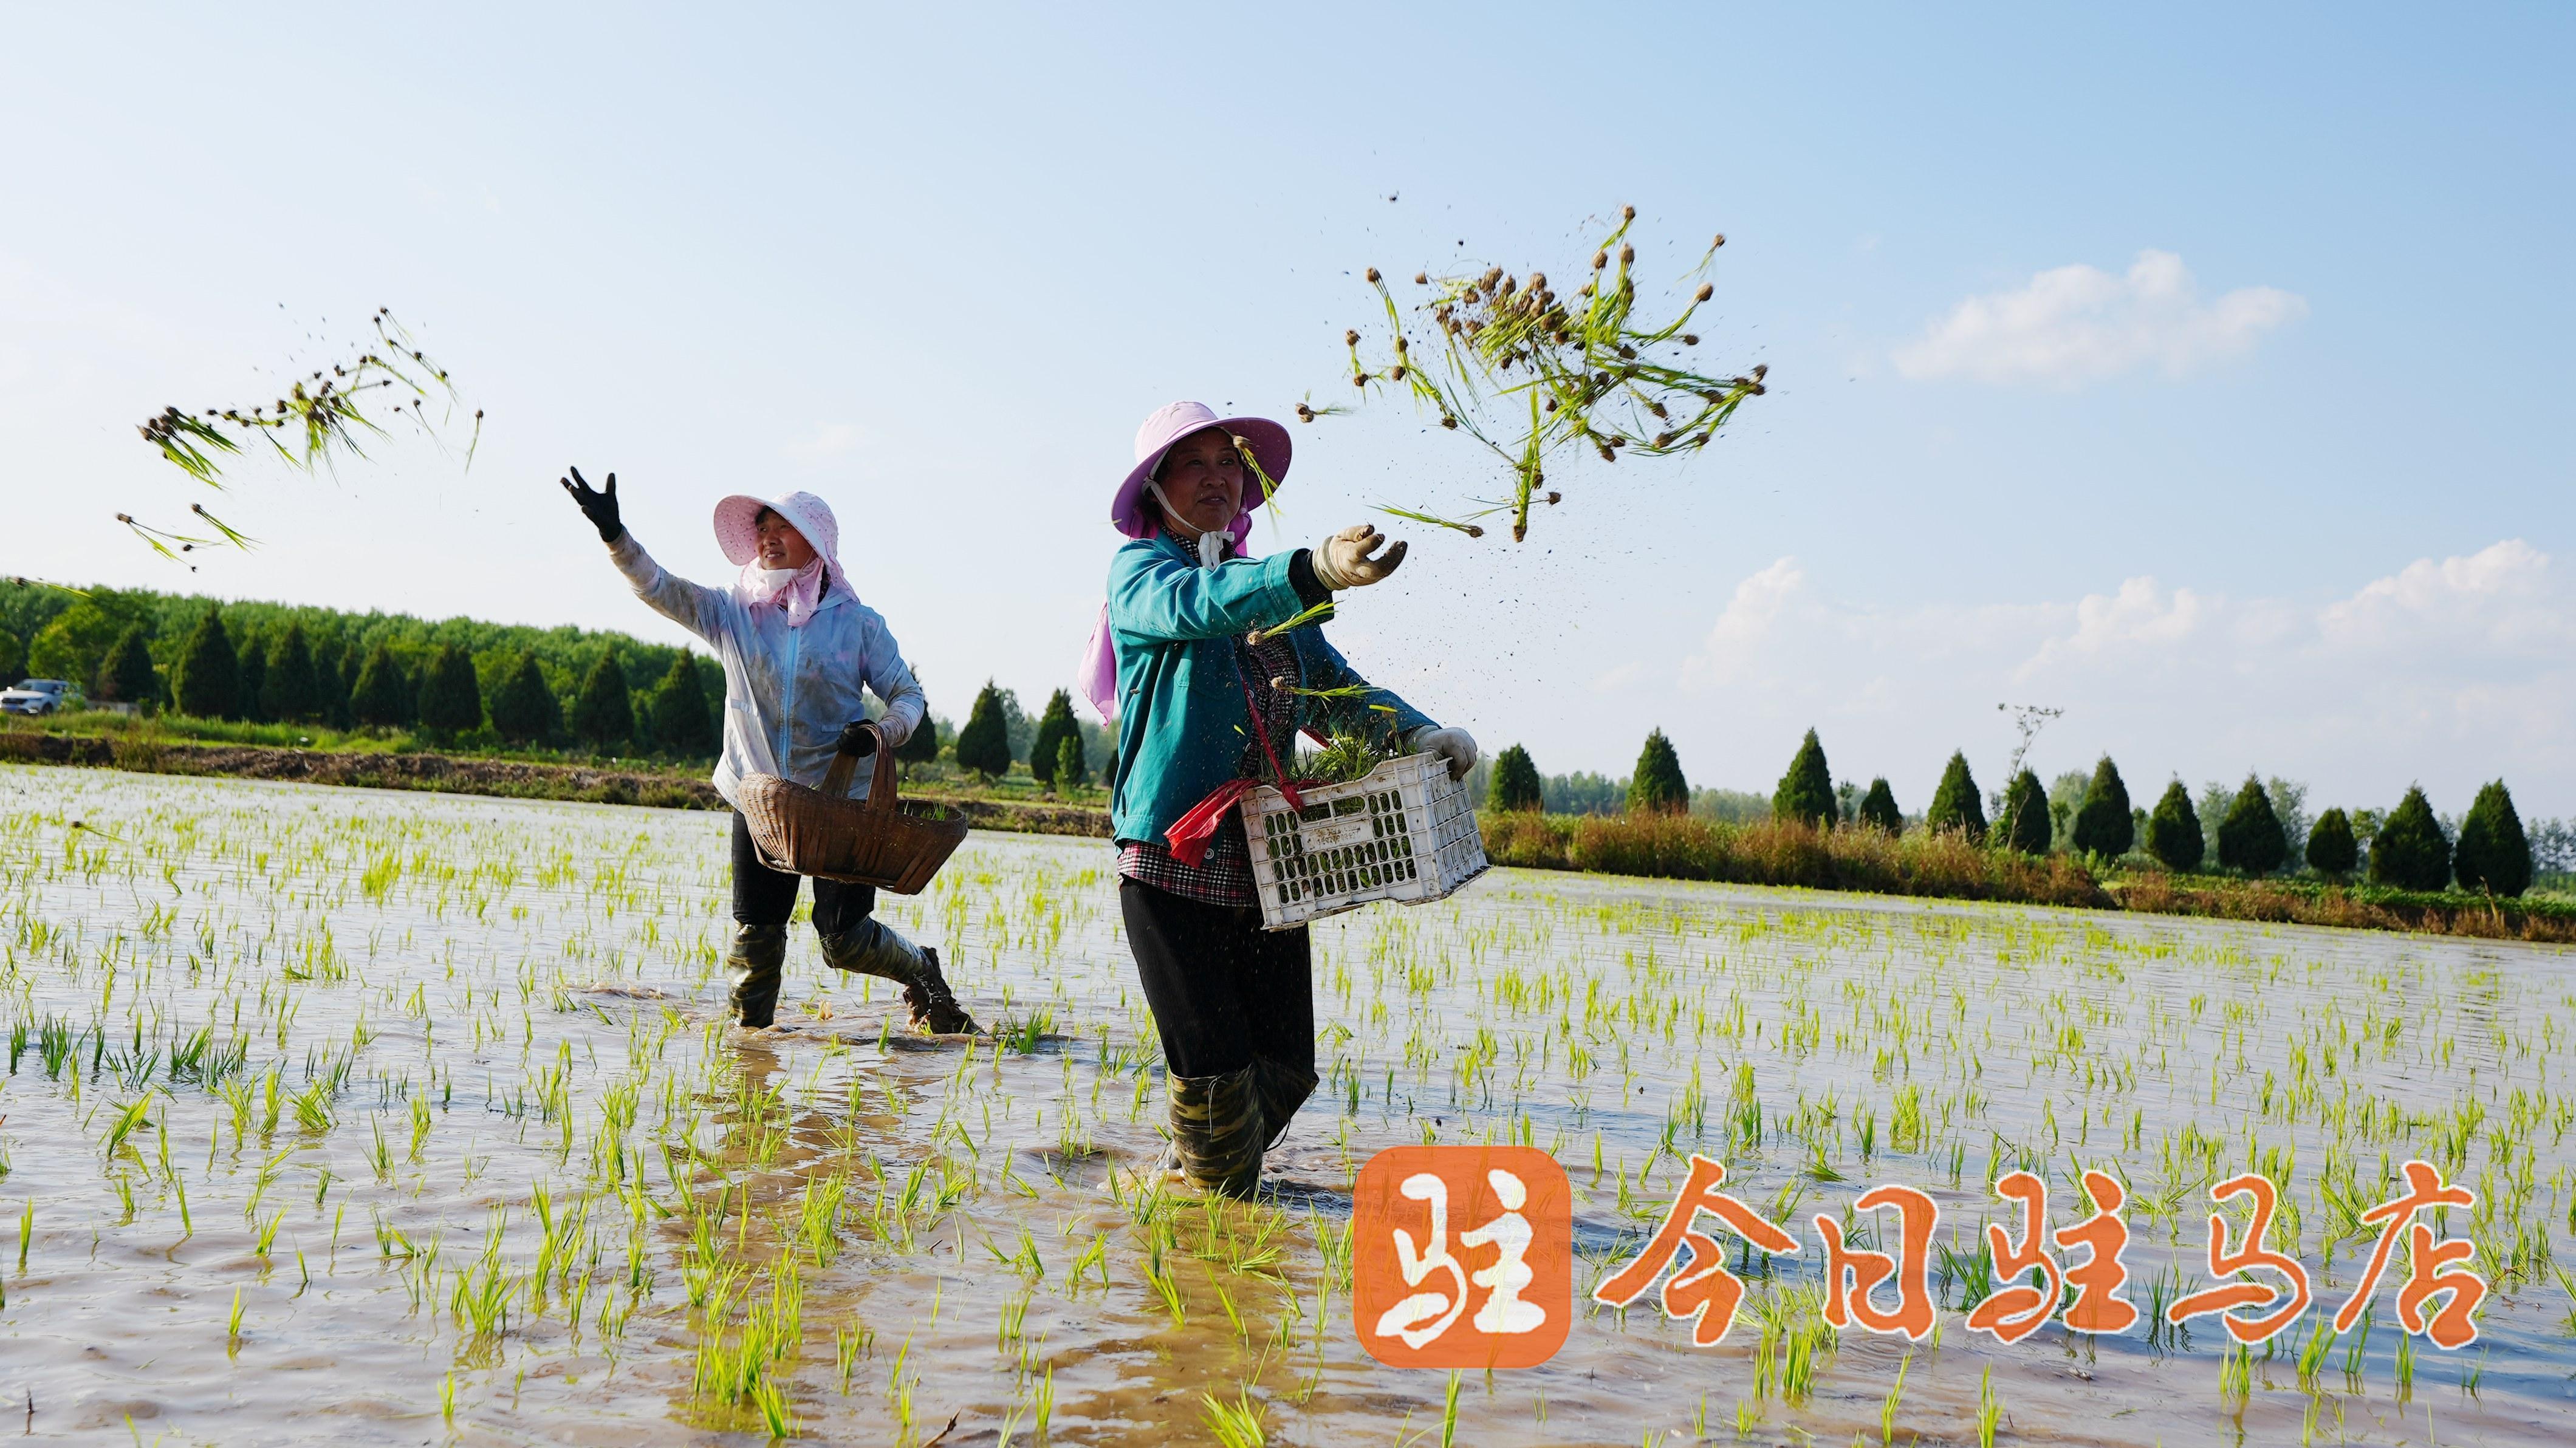 镇禾盛生态农业水稻种植基地,几十名工人正在没过膝盖的水田中抛秧